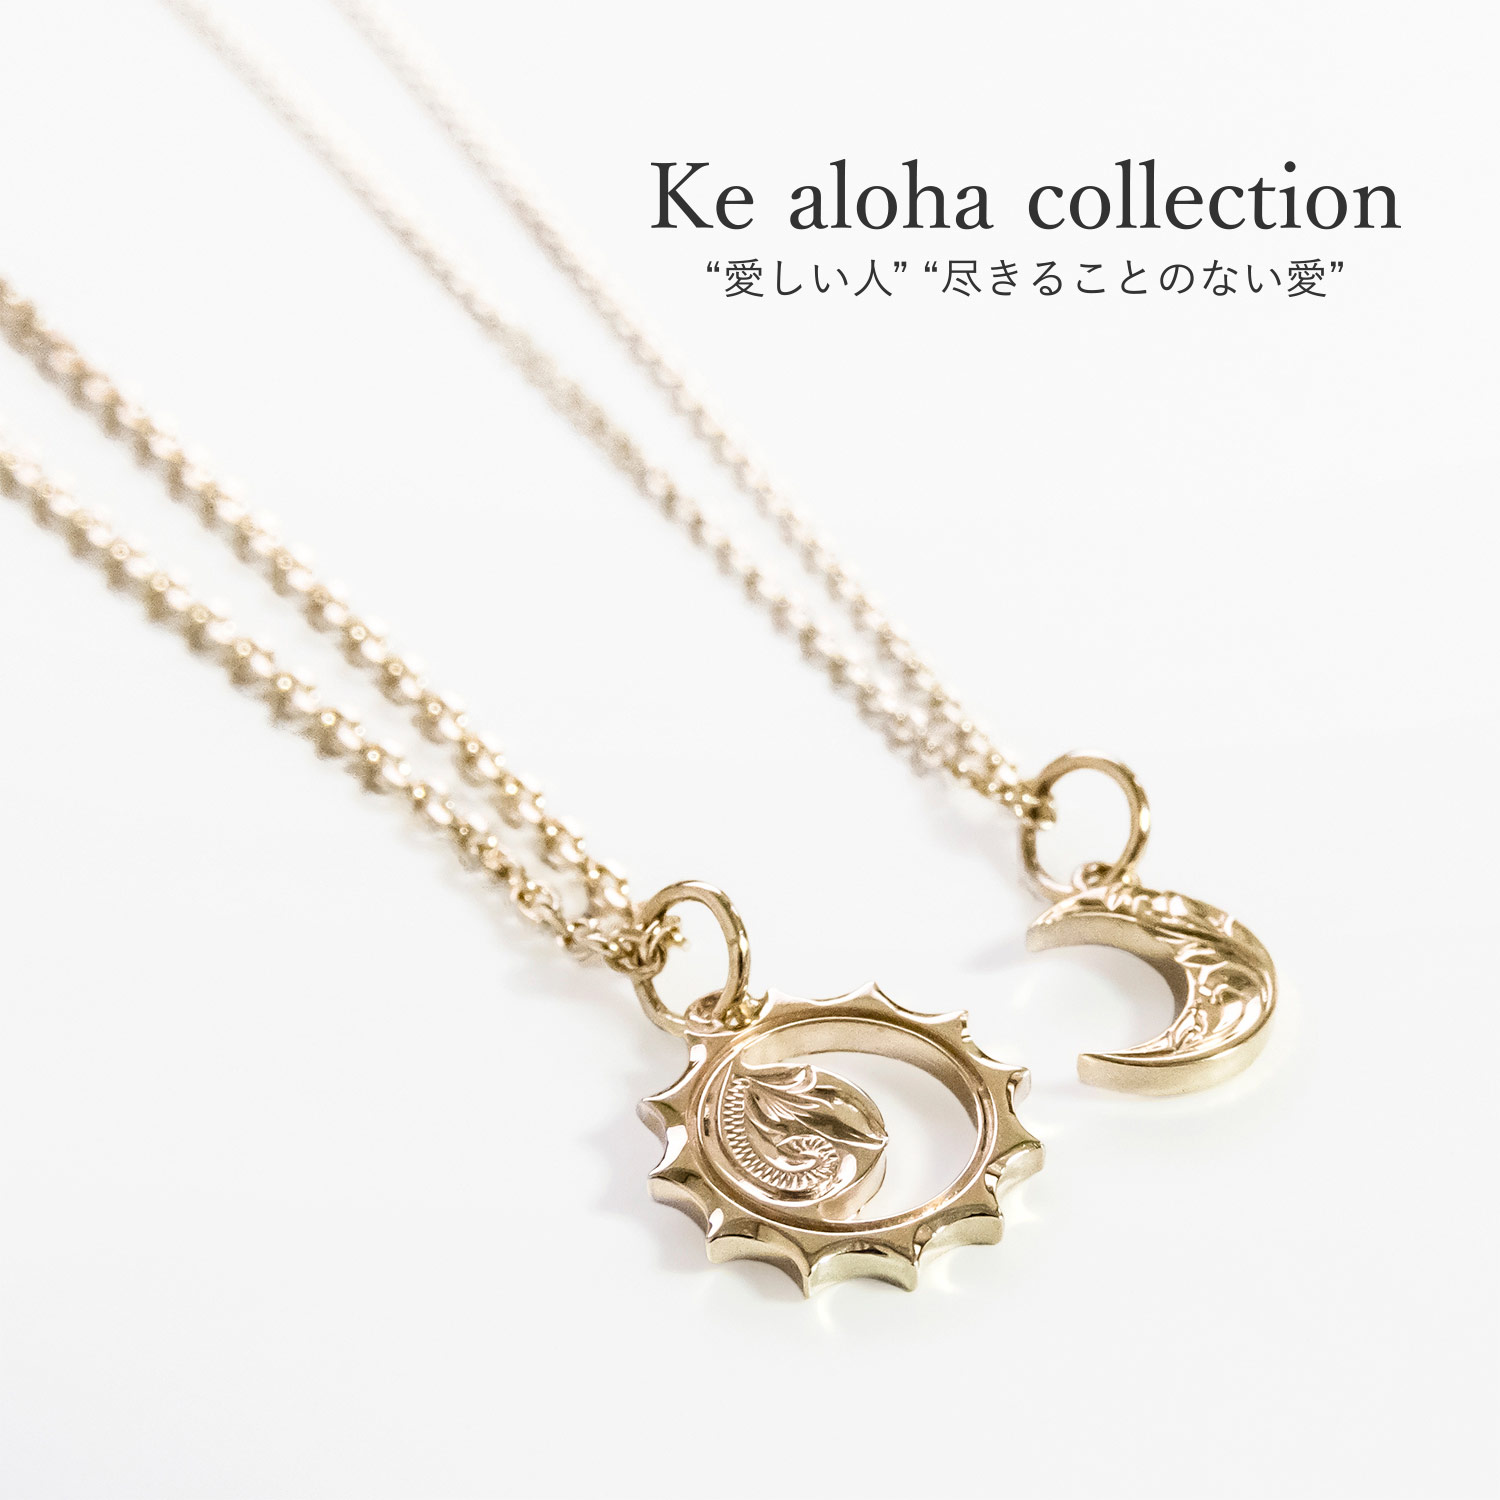 Ke aloha collection